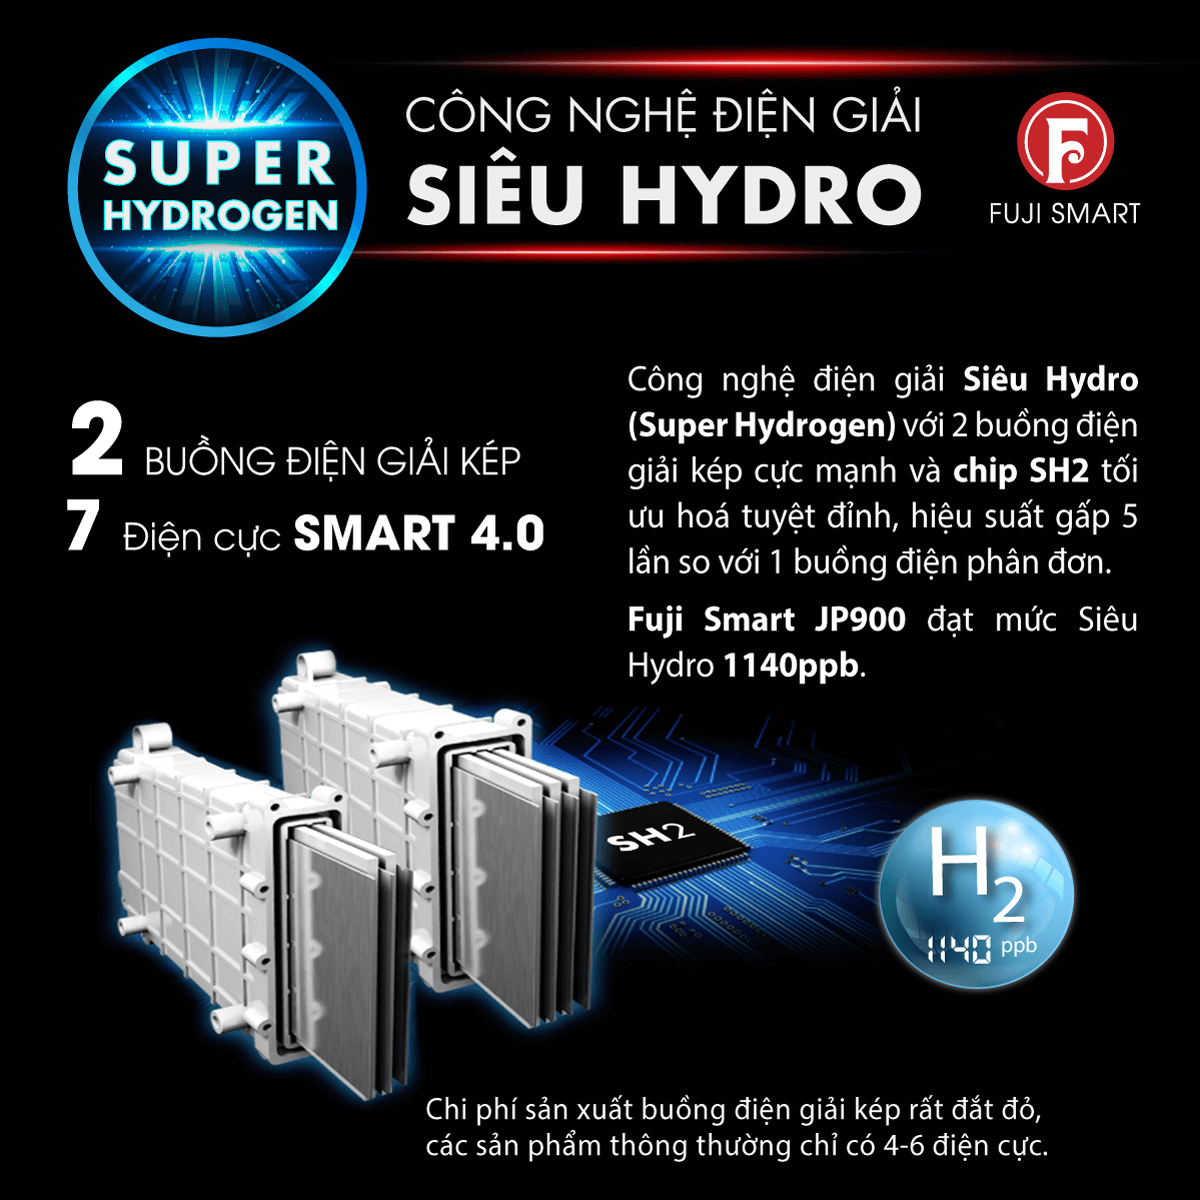 công nghệ điện giải siêu Hydro Super Hydrogen Fuji Smart JP900 1140ppb